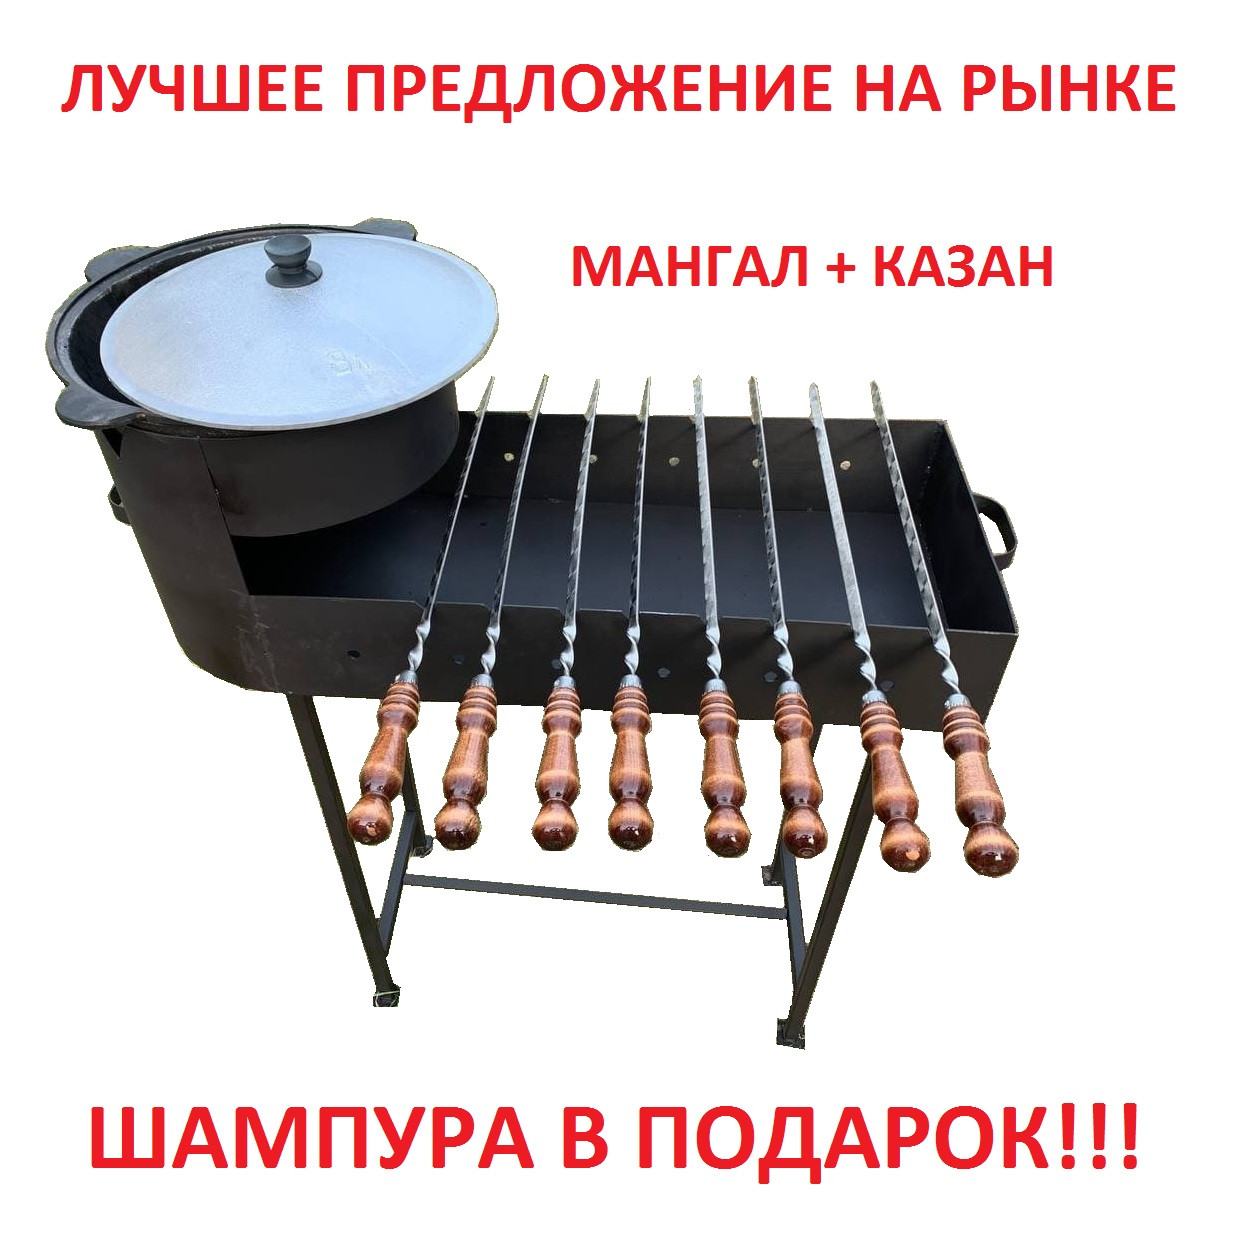 Набор Мангал с печью для казана и узбекский казан на 12 литров, фото 1